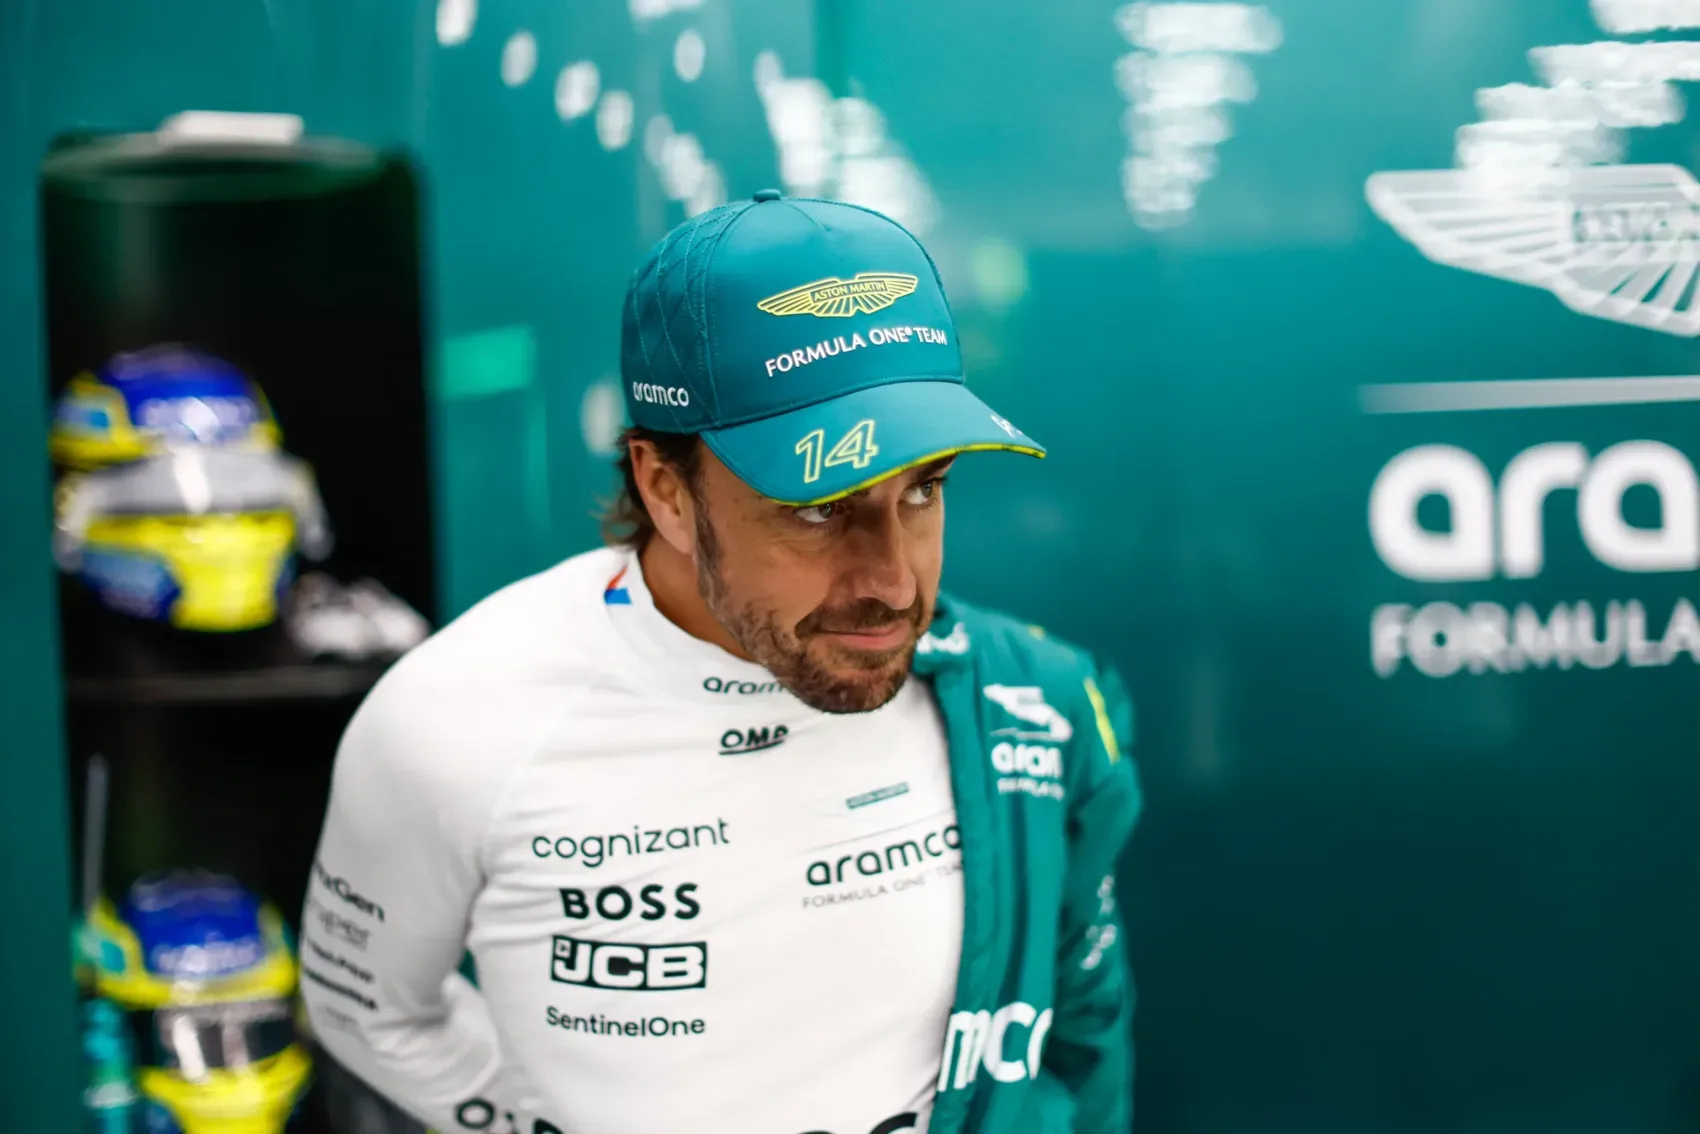 Az Aston Martin aggódik Alonso távozása miatt, de bízik lesajnált csapattársában – Hatékony együttműködés kulcsfontosságú a sikeres csapatmunkához.